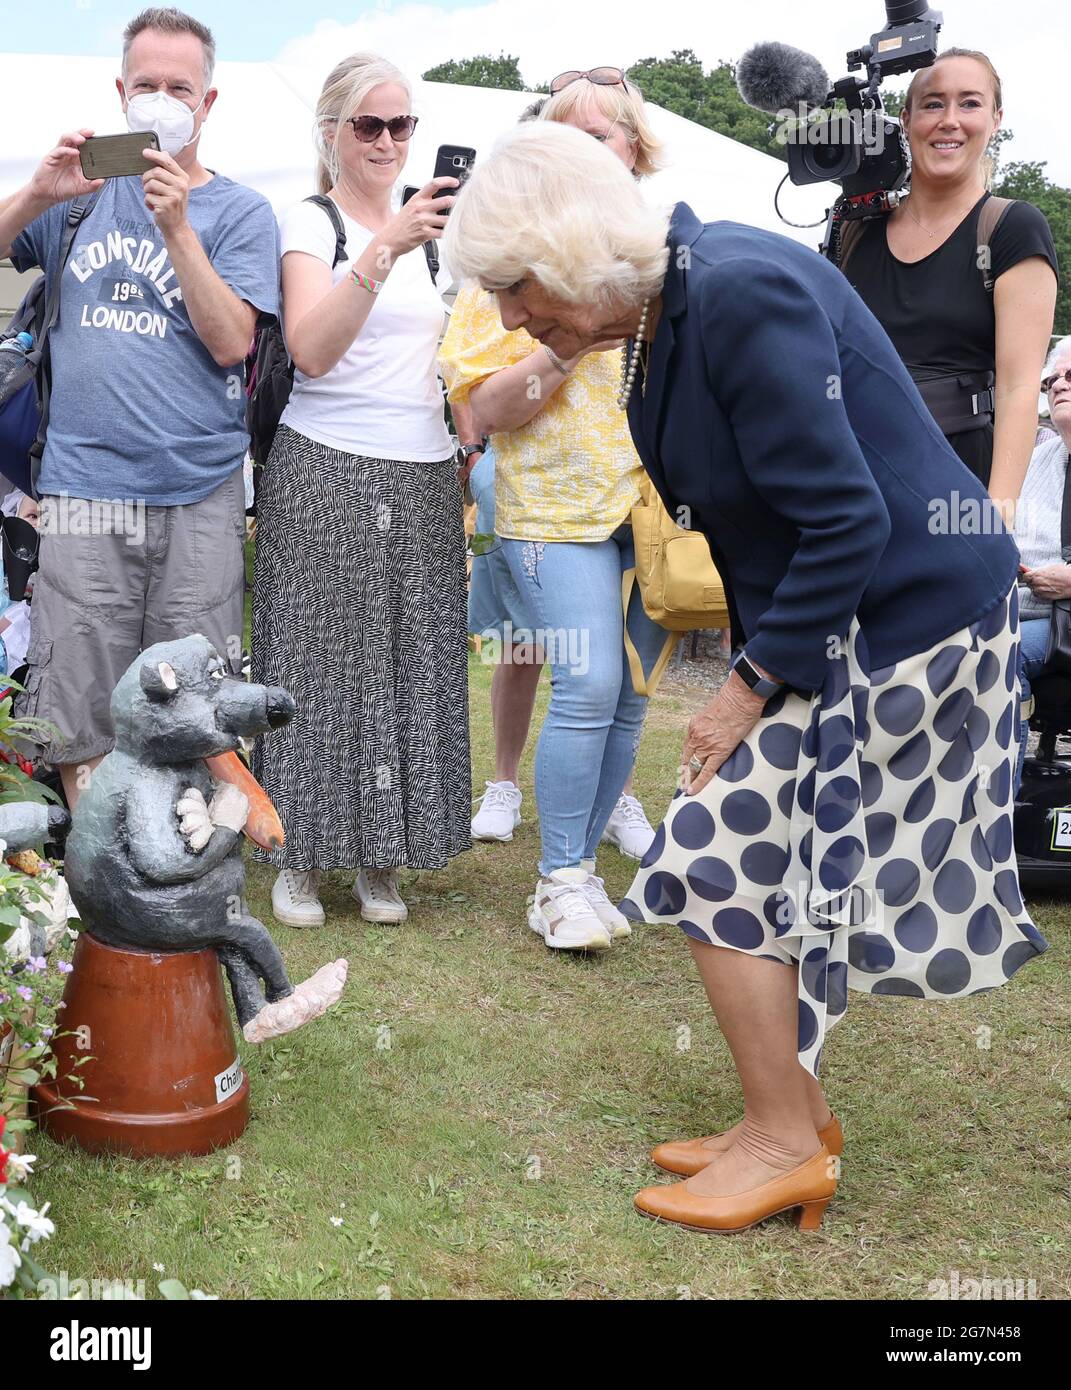 La Duchessa di Cornovaglia guarda un gnome giardino chiamato Charles durante una visita al Great Yorkshire Show al Great Yorkshire Showground ad Harrogate, North Yorkshire. Data immagine: Giovedì 15 luglio 2021. Foto Stock